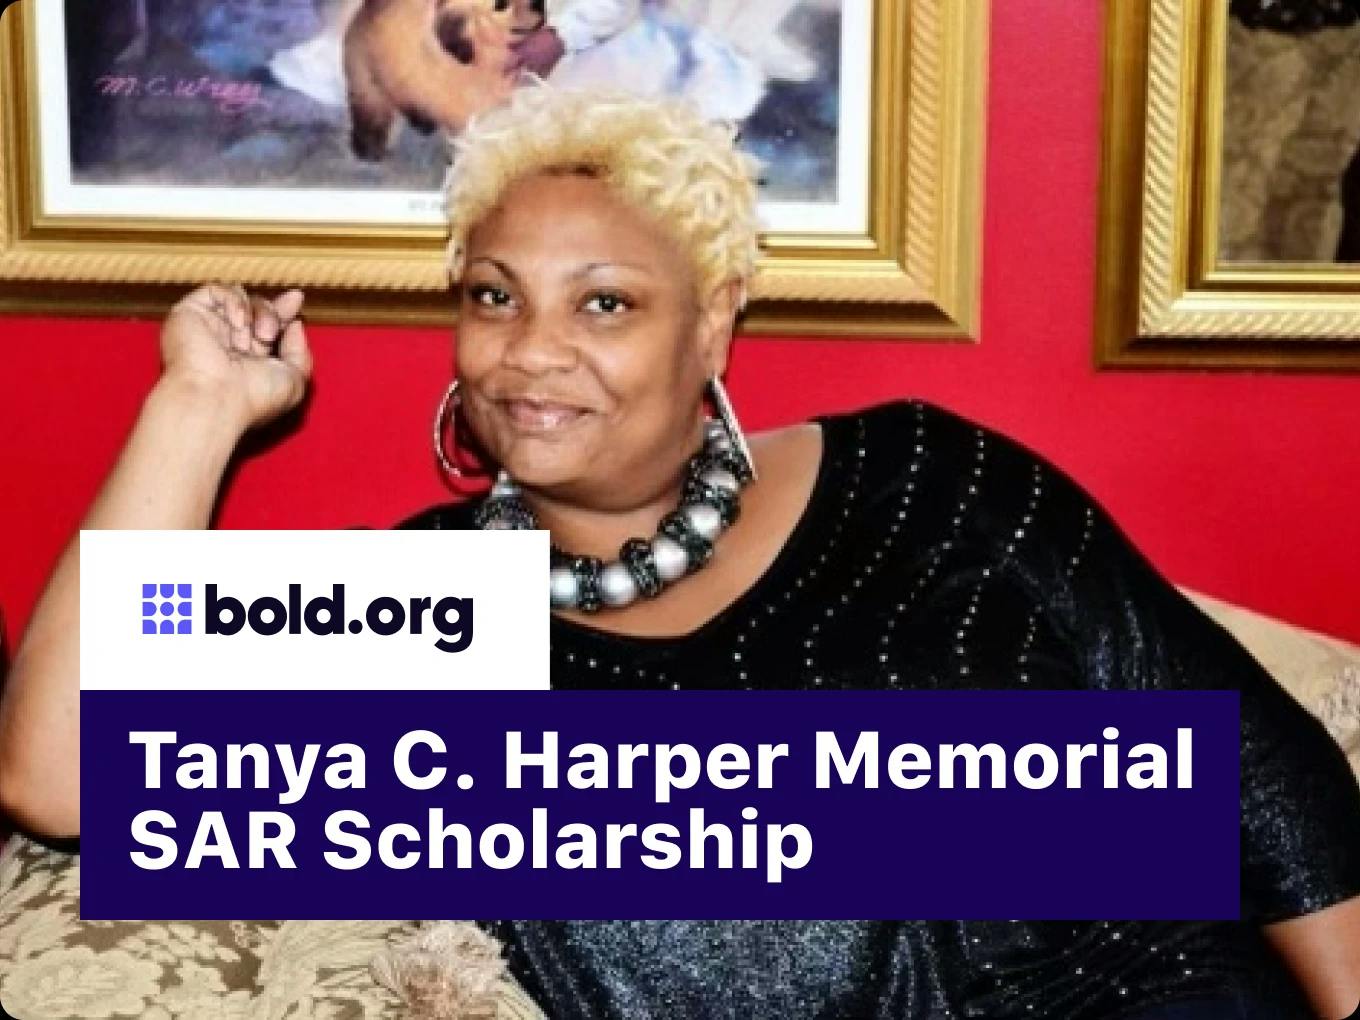 Tanya C. Harper Memorial SAR Scholarship